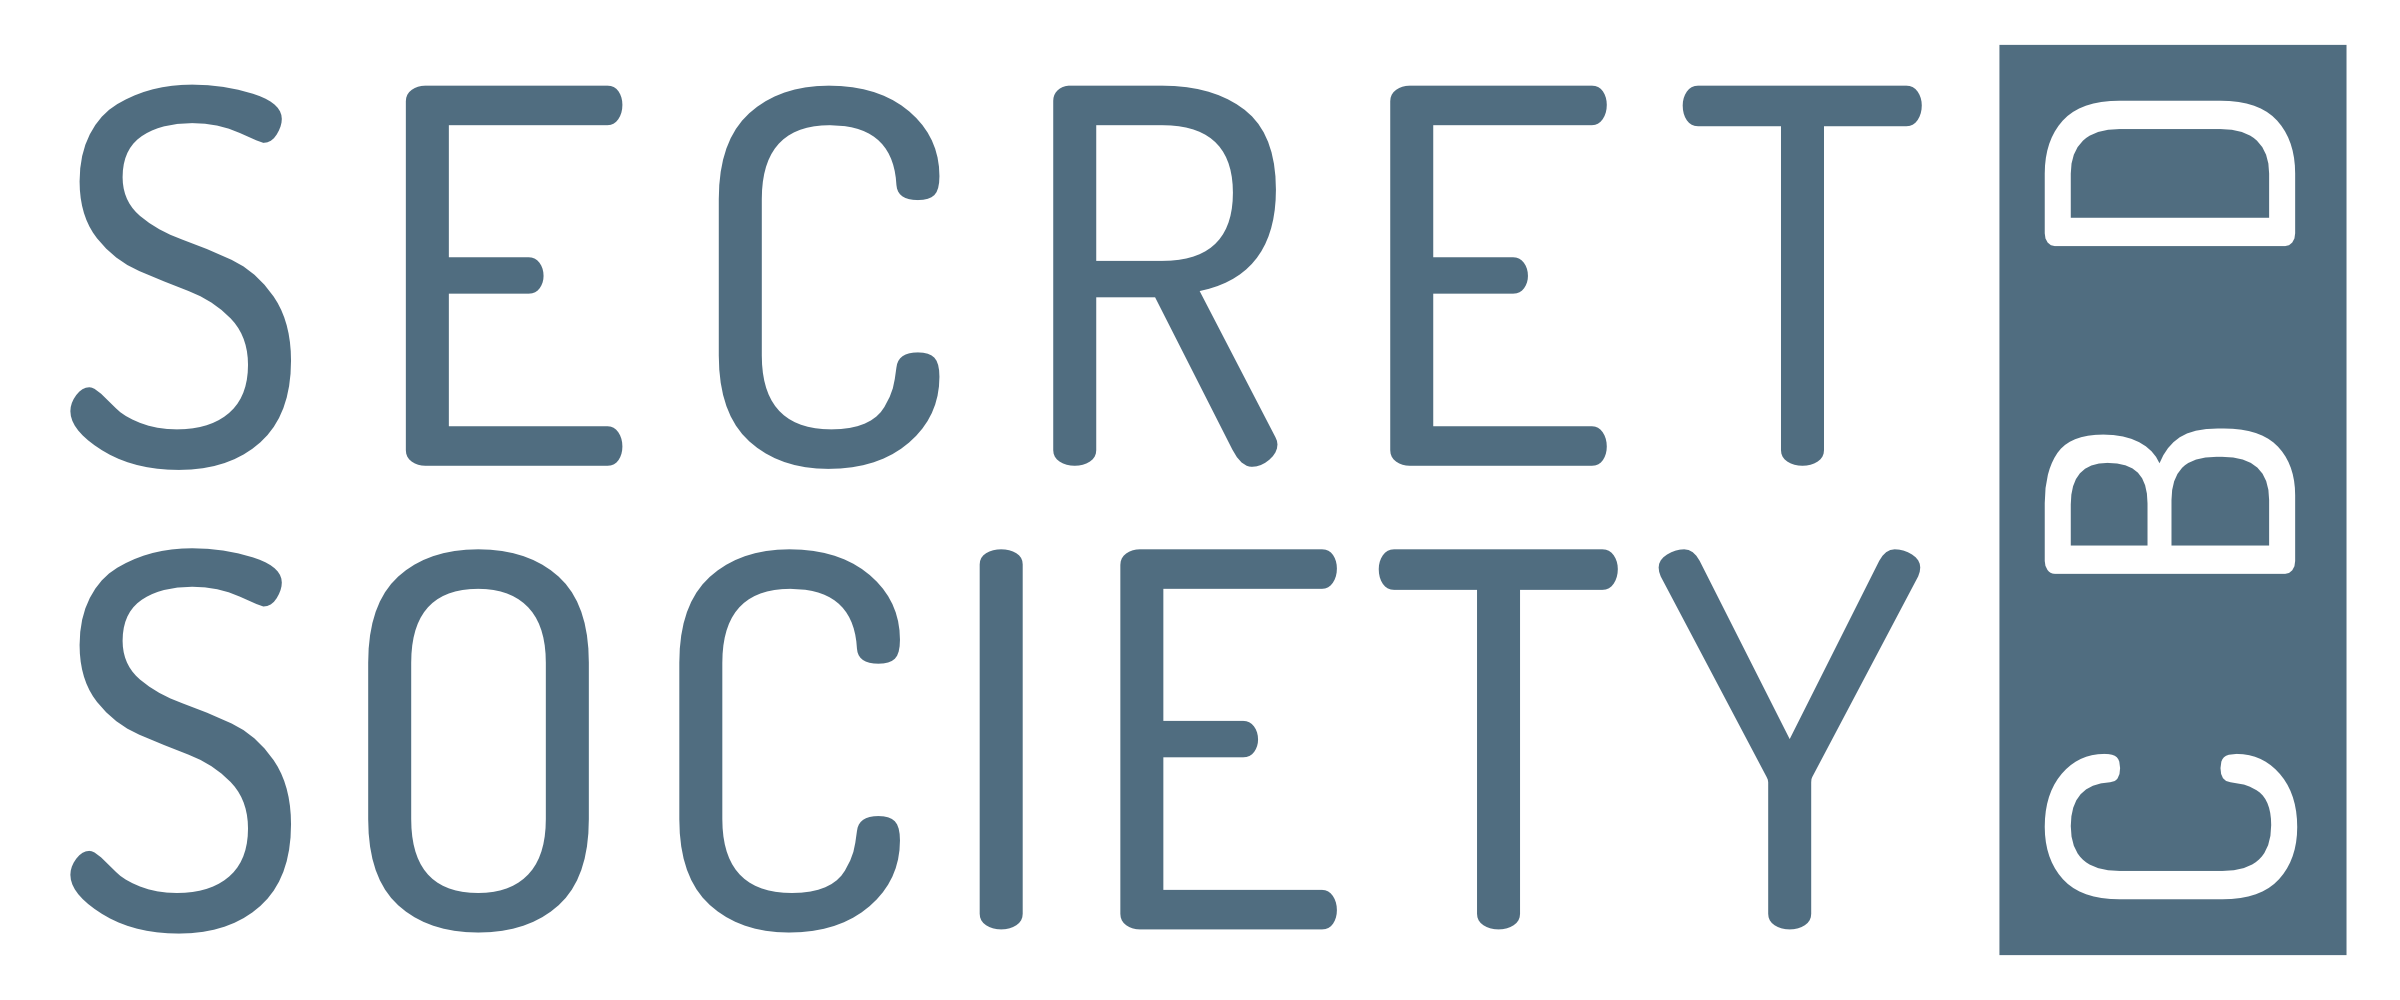 Secret Society CBD logo